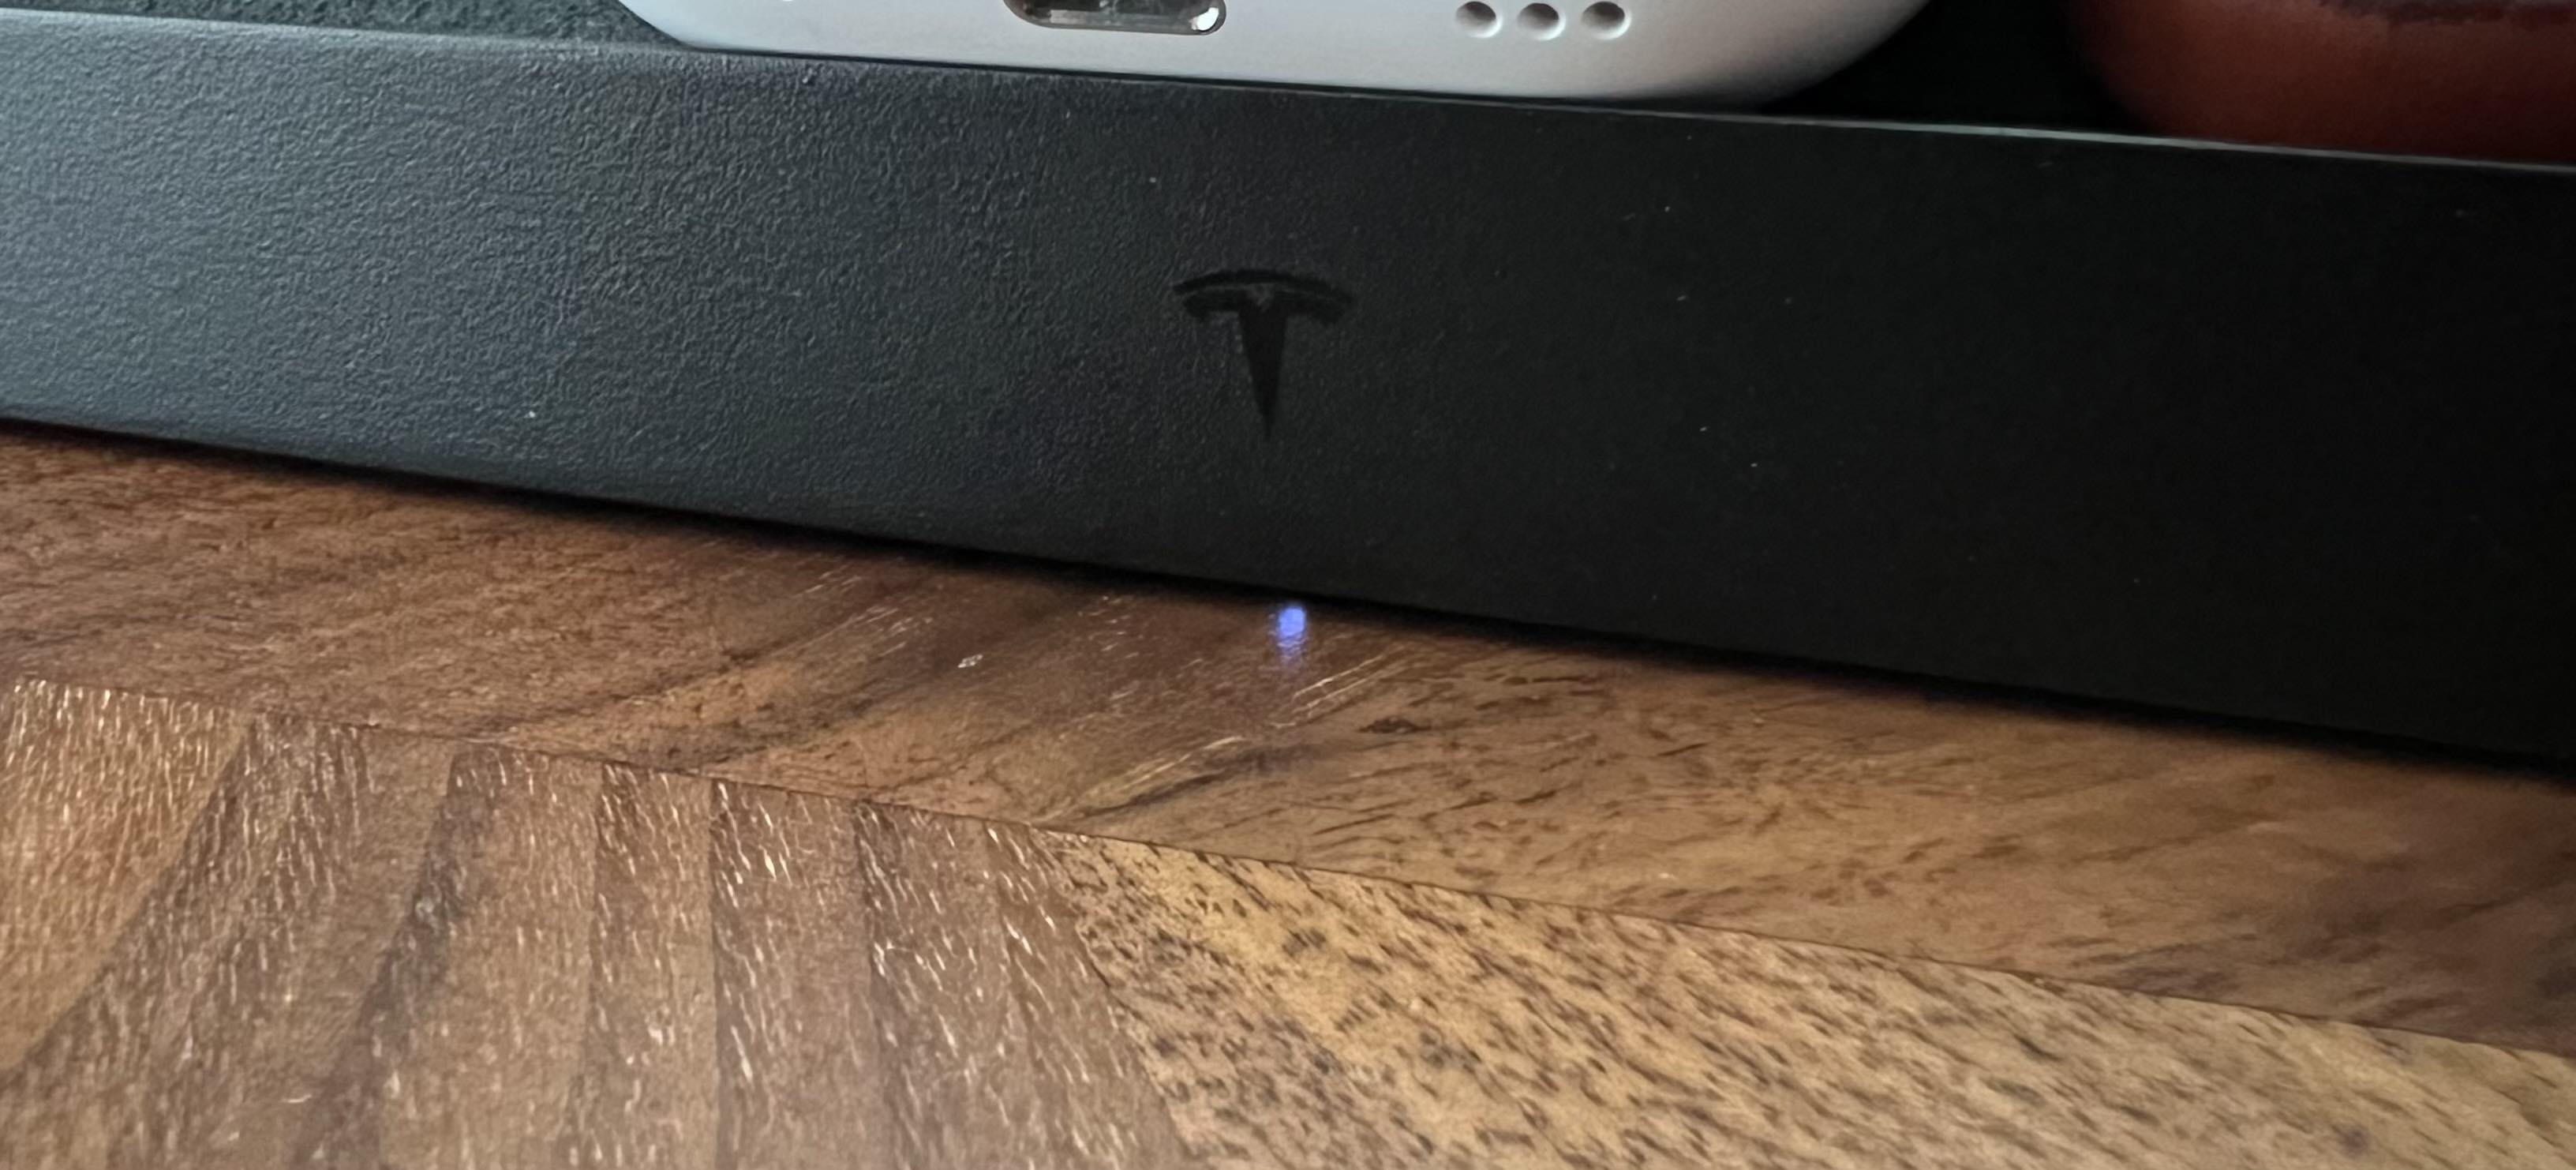 Indicador de LED da plataforma de carregamento sem fio Tesla